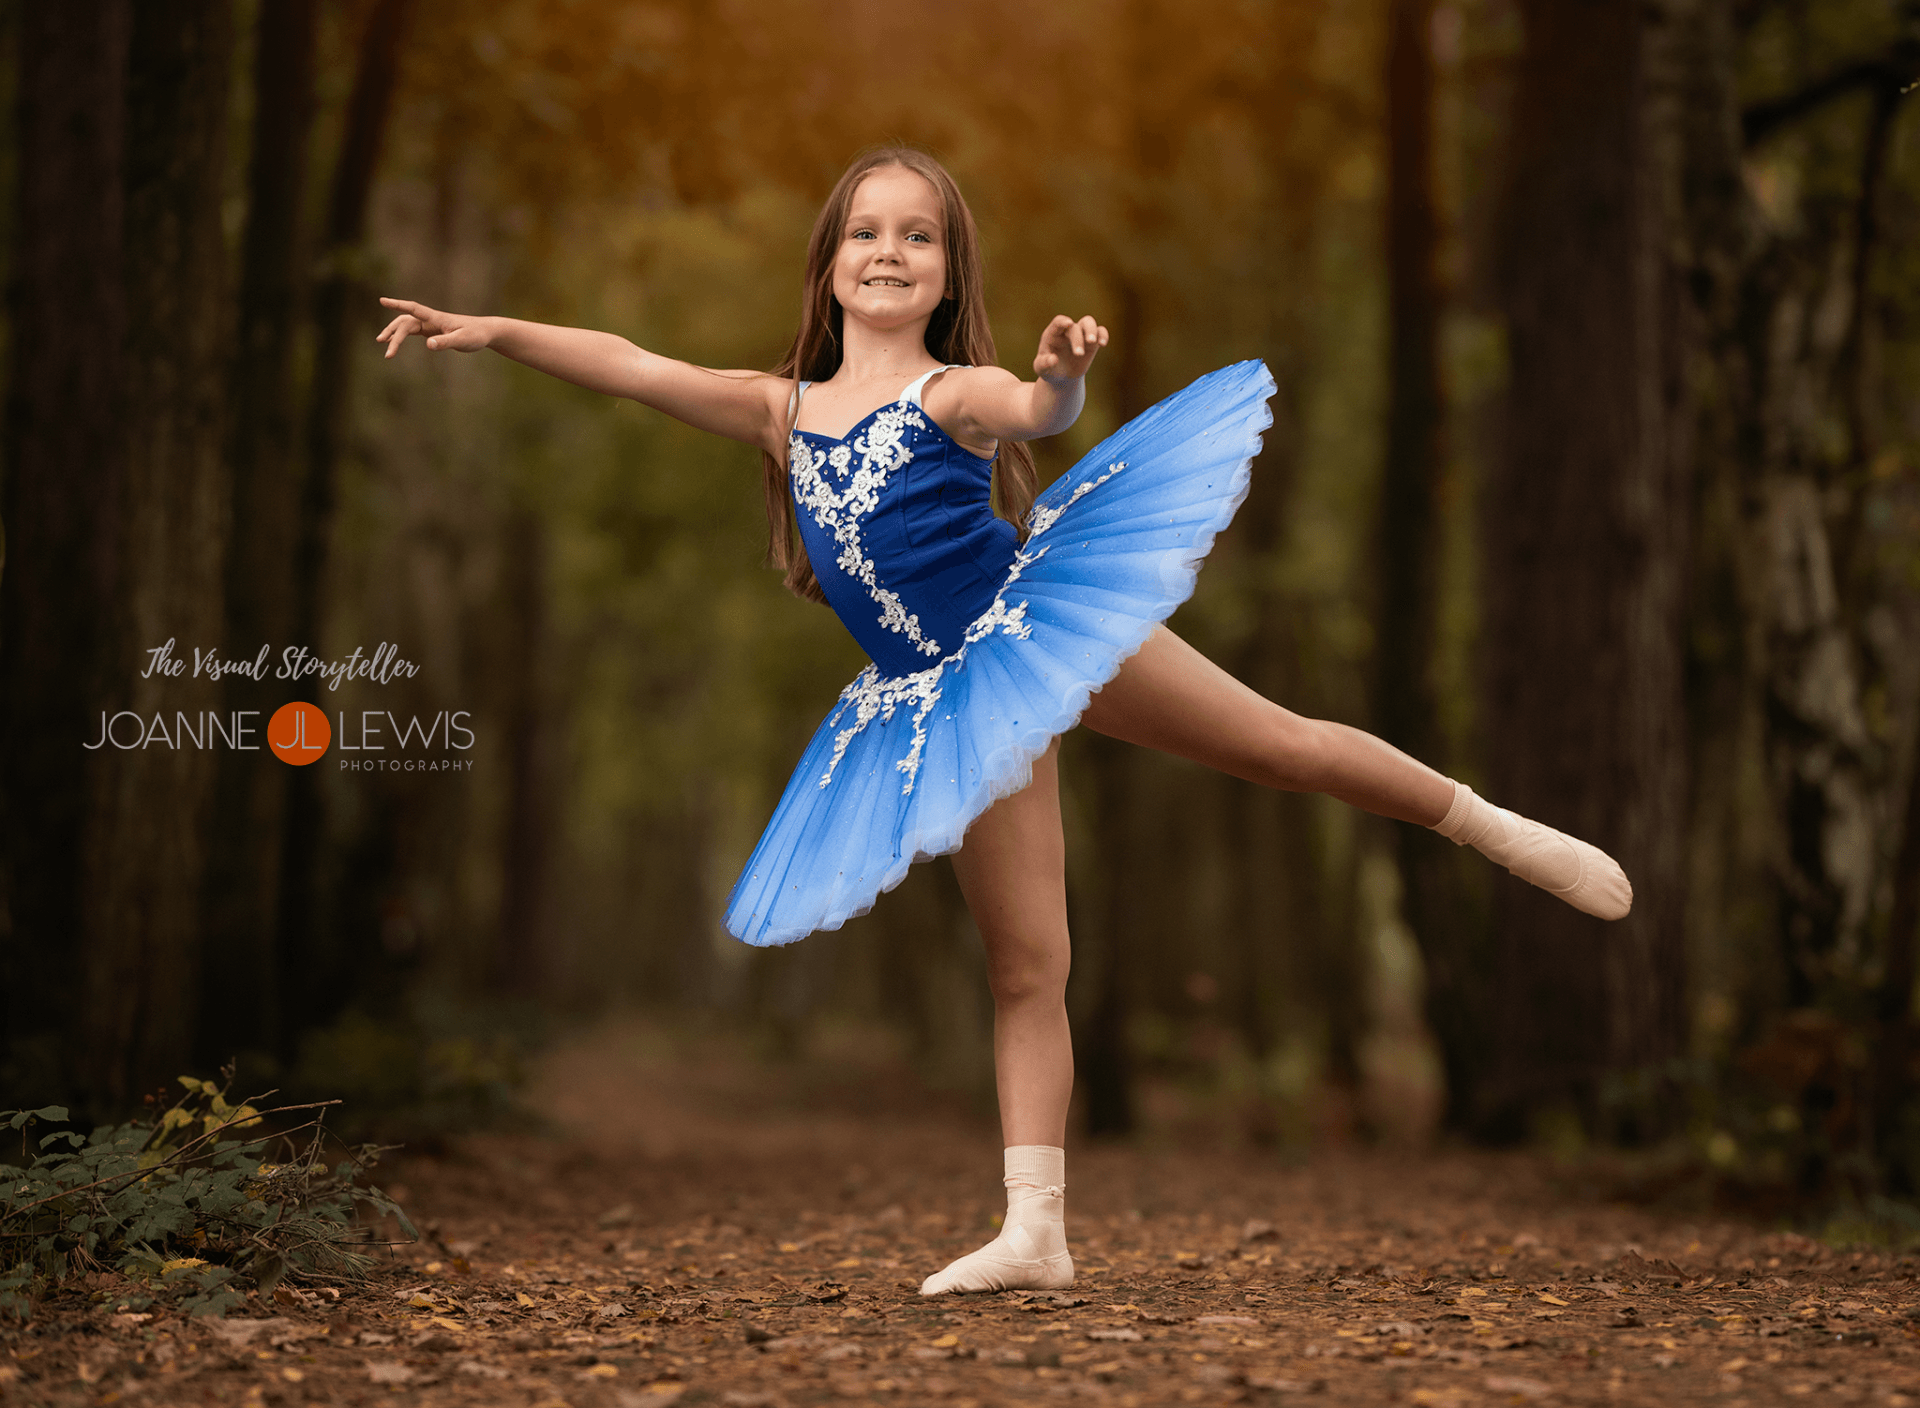 Ballet dancer photoshoot in the woods